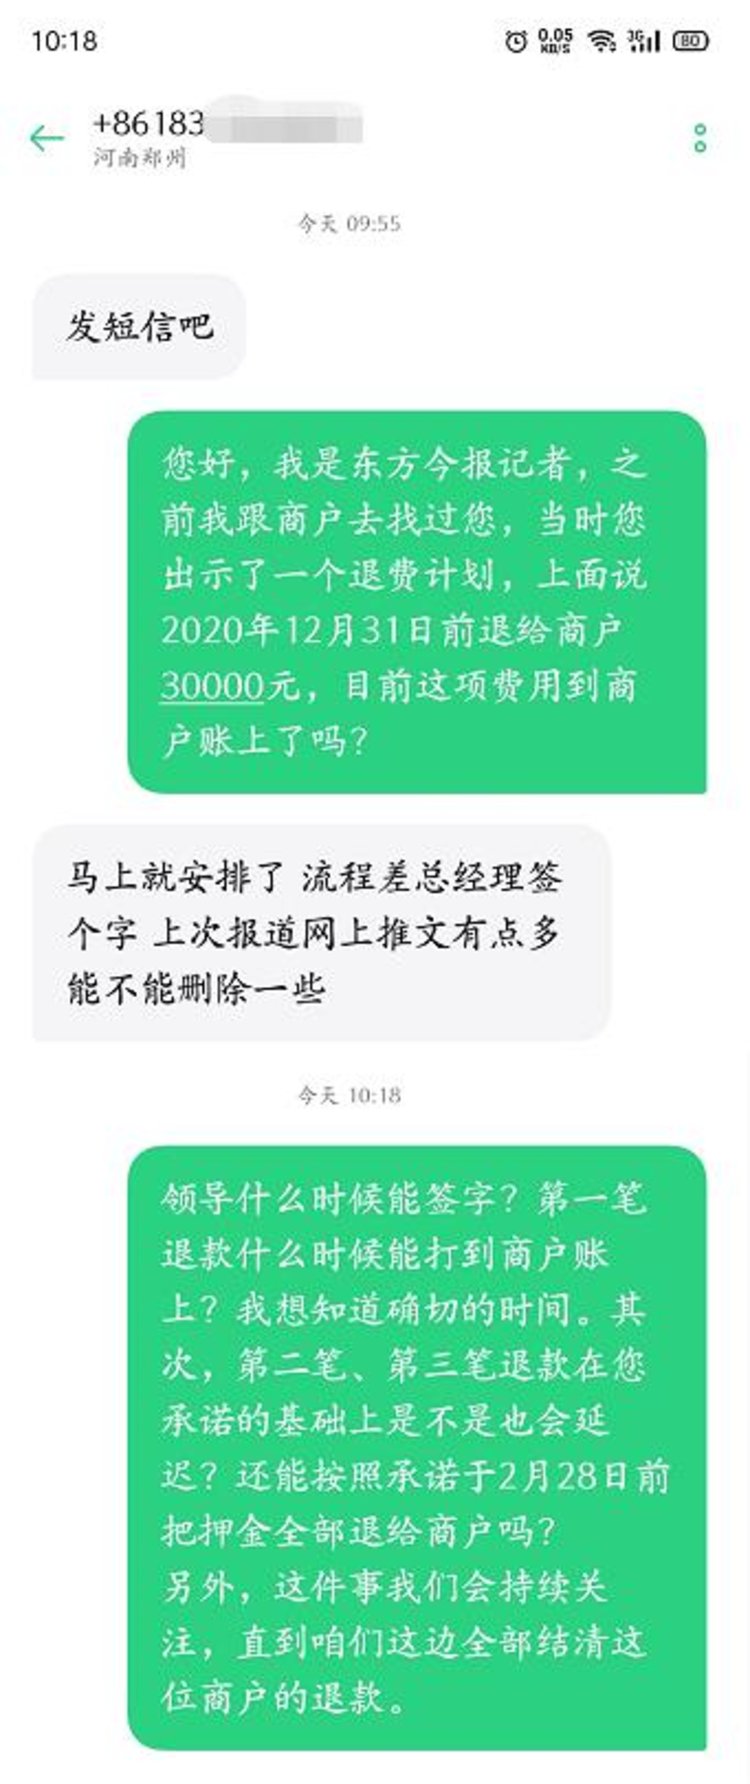 郑州郑东花卉市场承诺商户元旦前退押金3万元，至今未到账